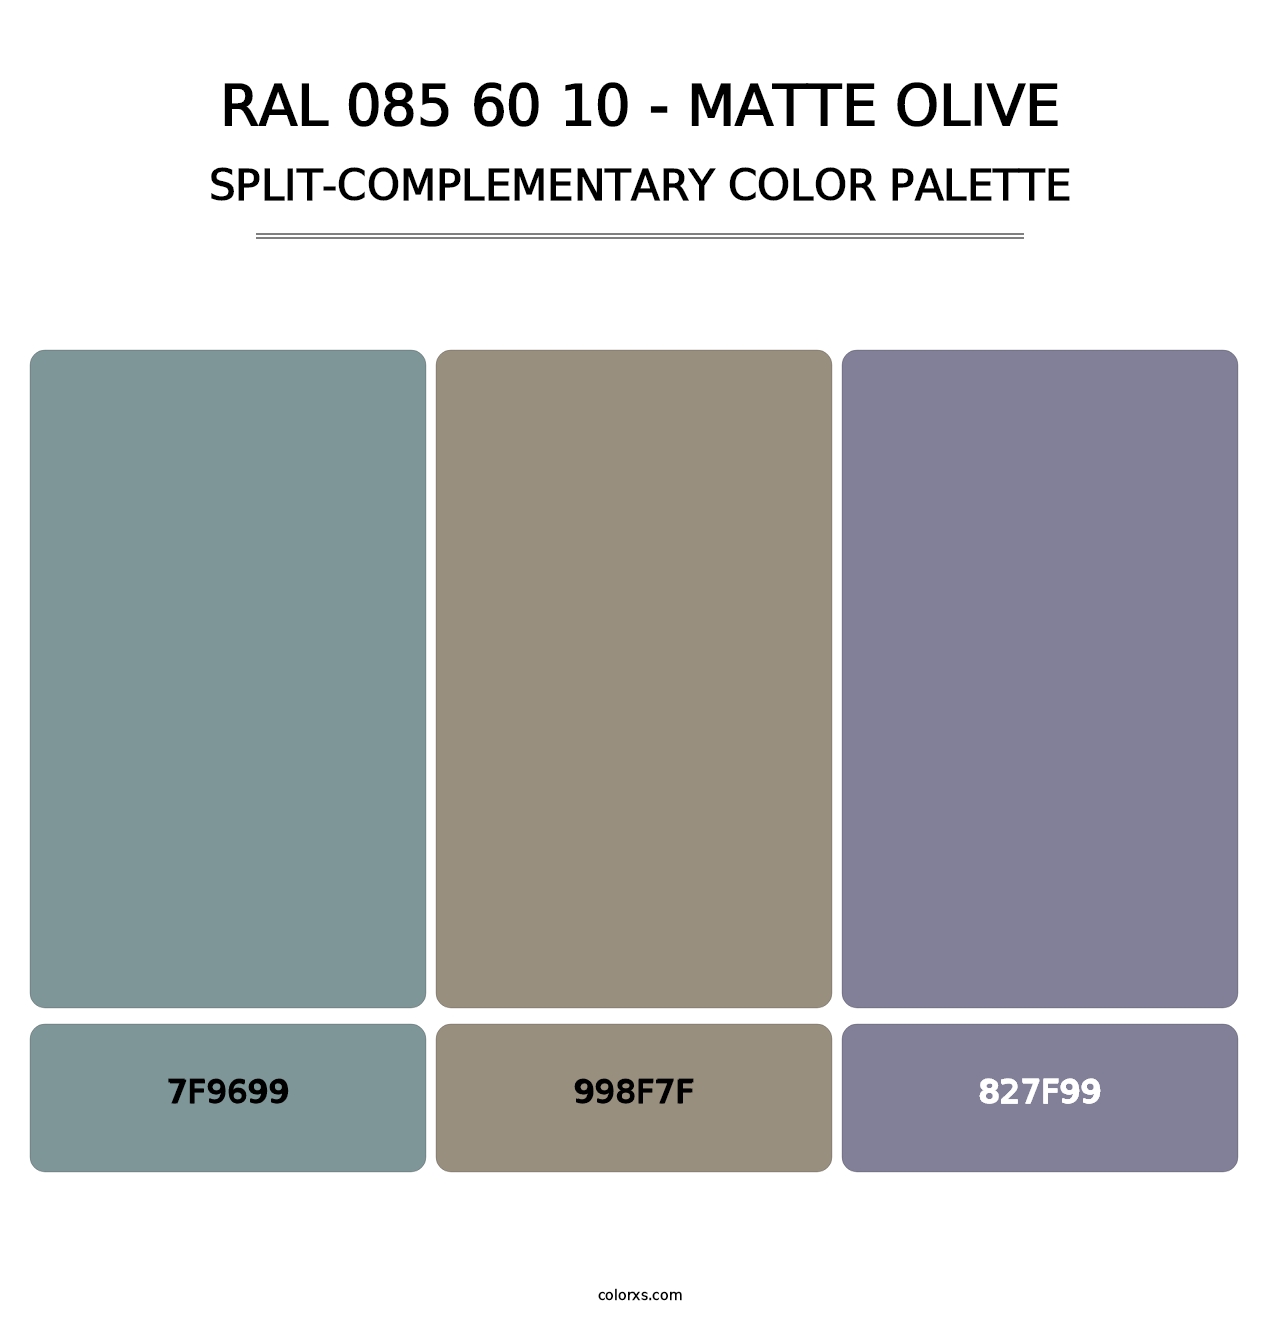 RAL 085 60 10 - Matte Olive - Split-Complementary Color Palette